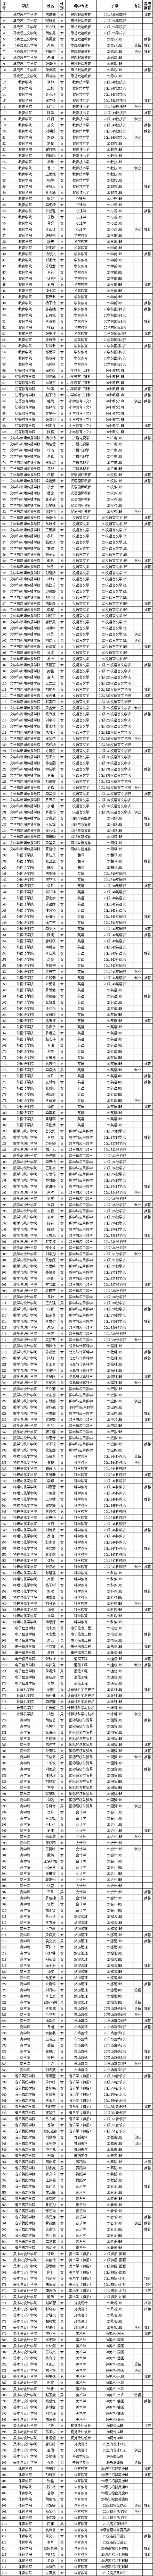 挂网公示-2024届优秀毕业生推荐名册汇总表.png